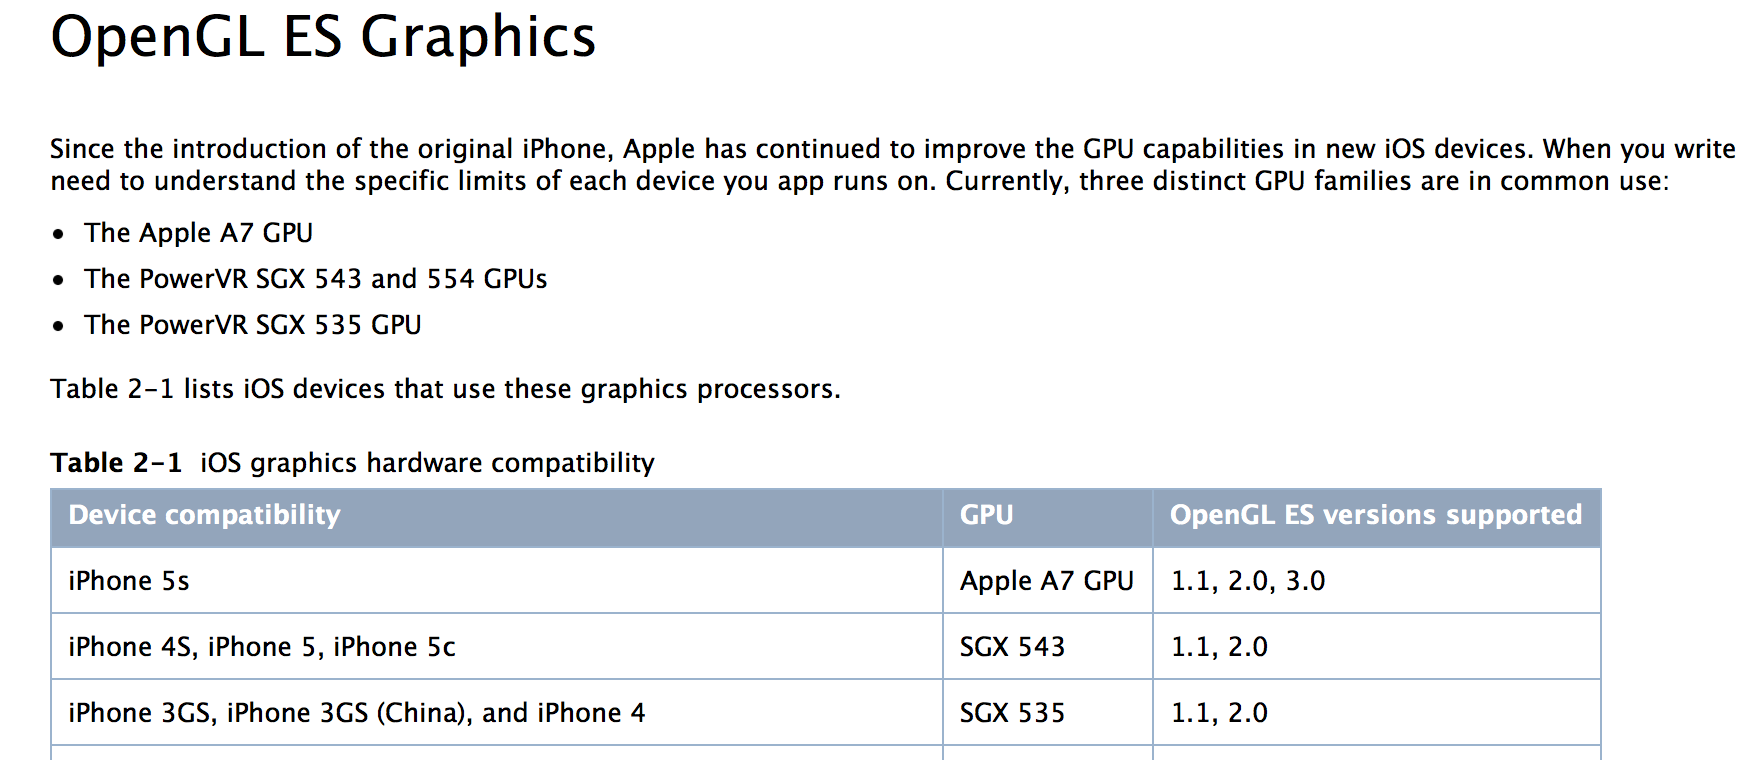 iPhone 5S hardware specs leak: 4-inch IGZO Retina display, 12MP camera,  quad-core GPU, same CPU